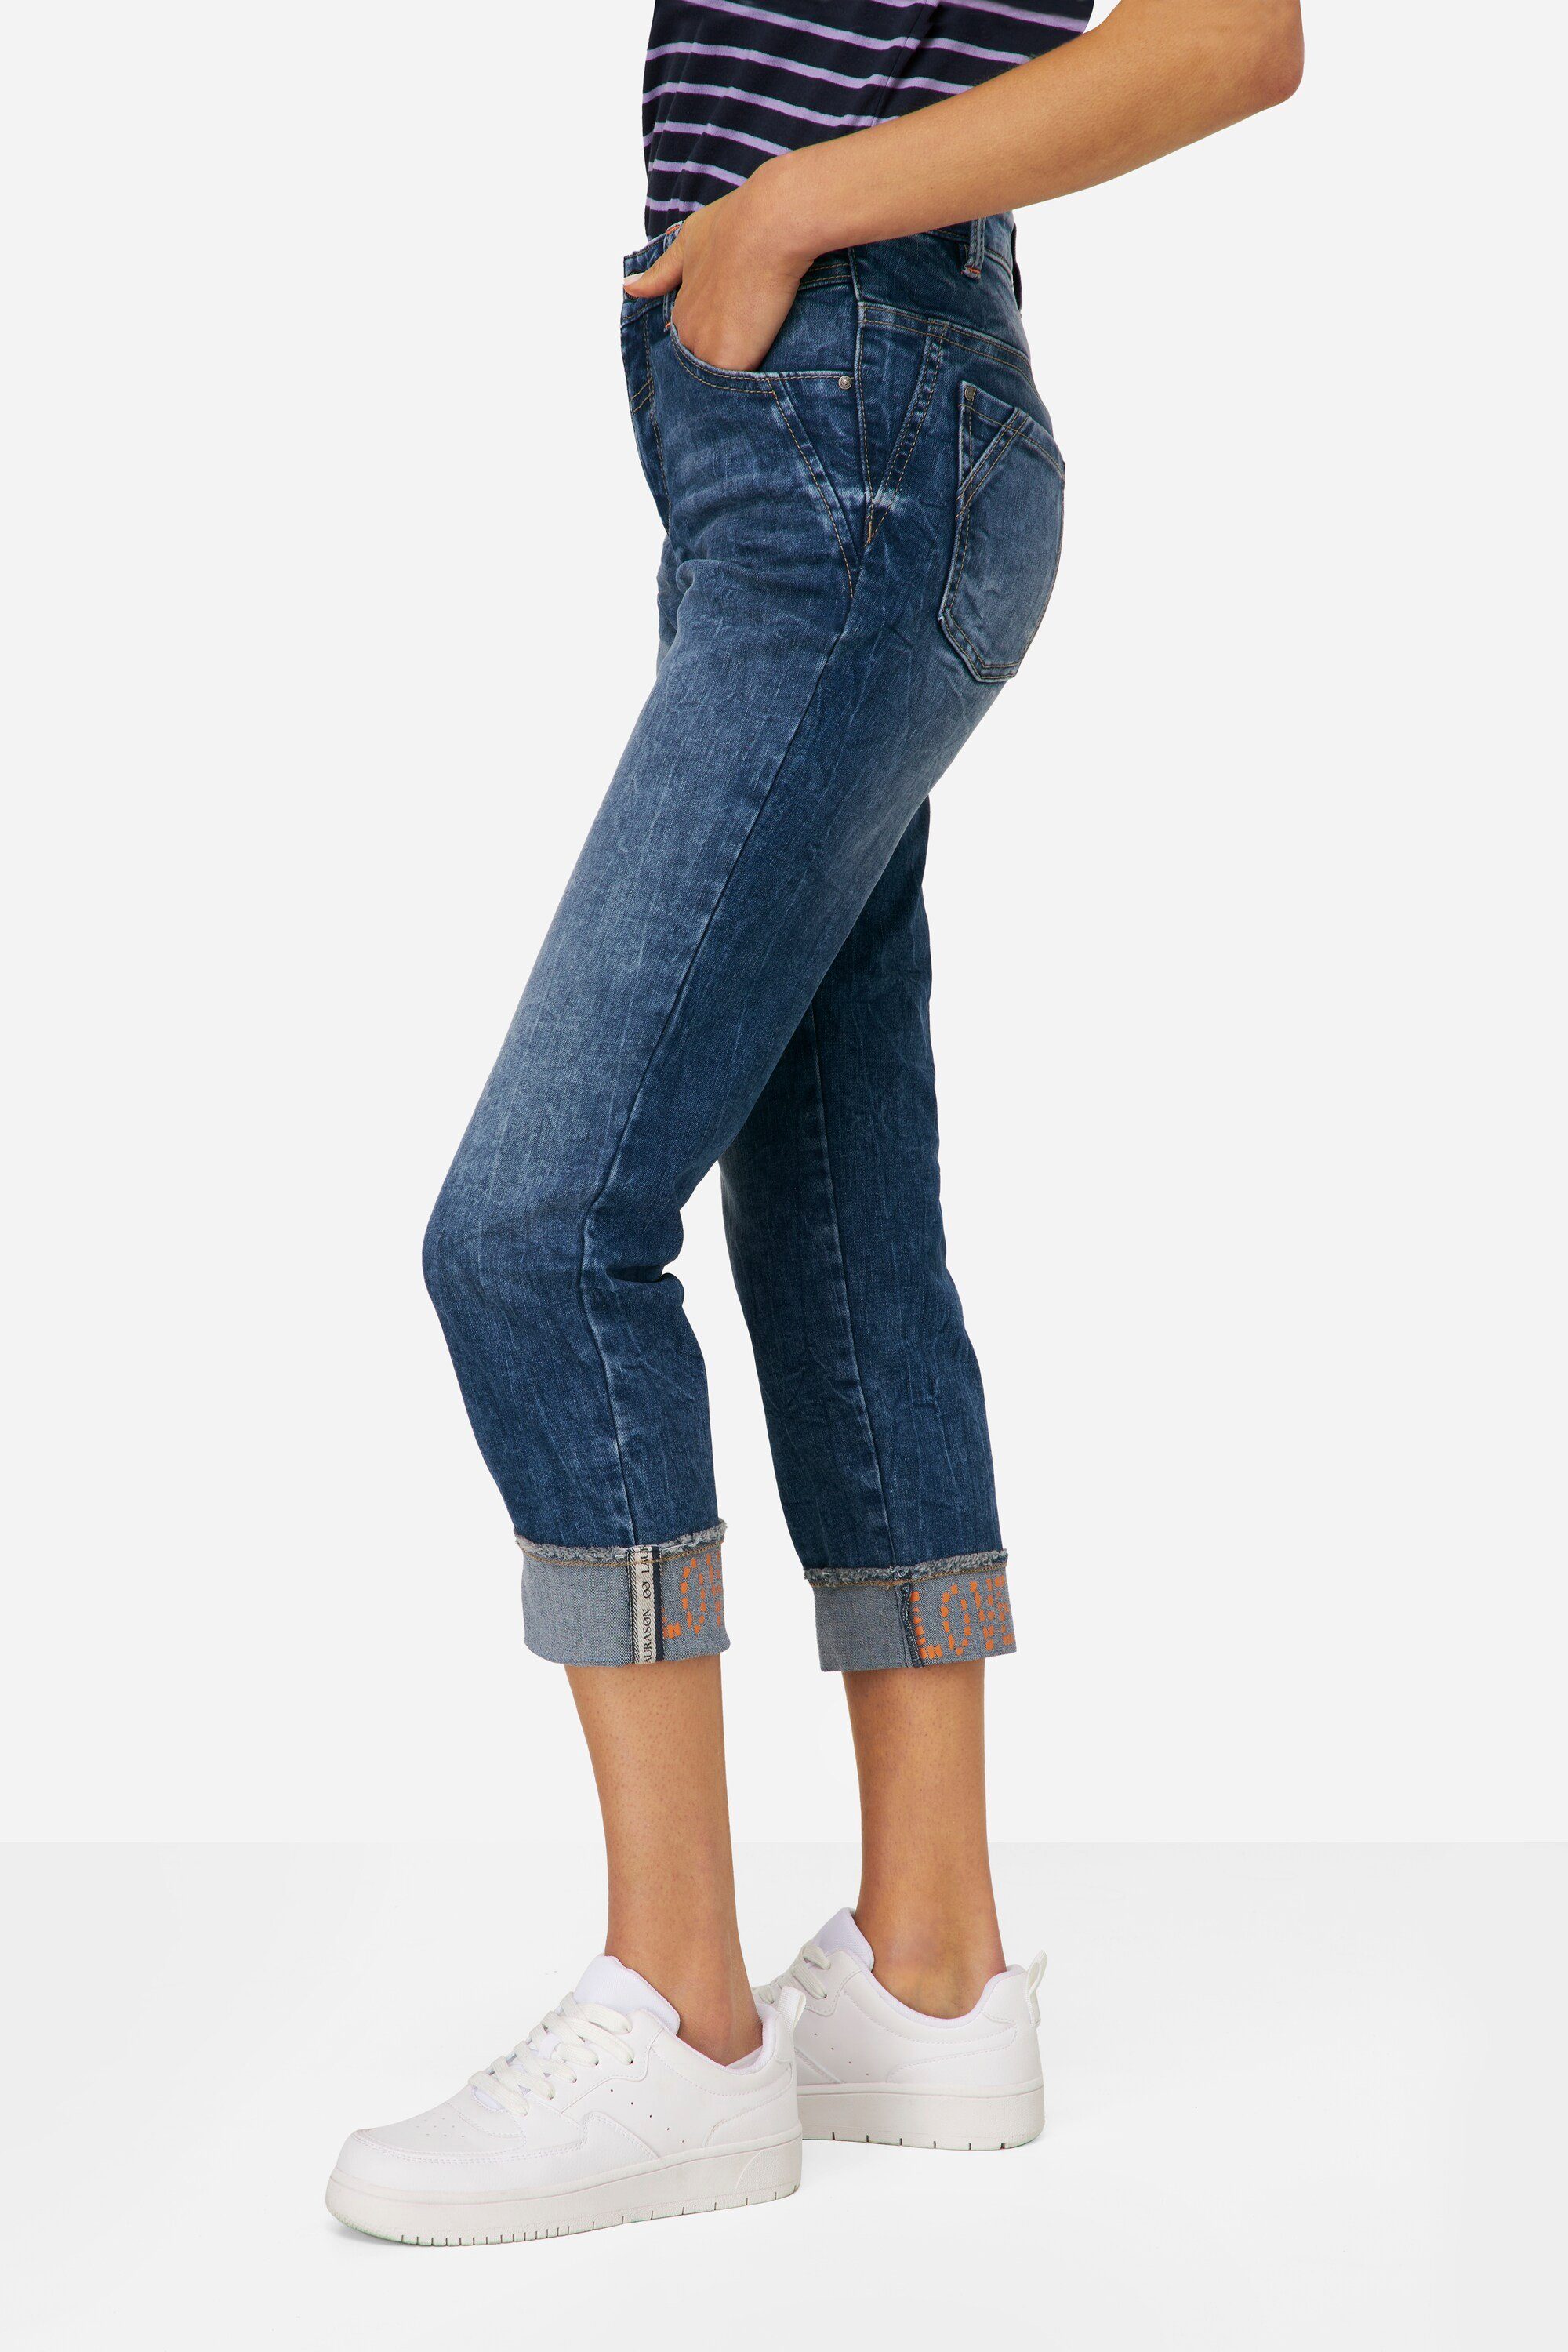 5-Pocket Regular-fit-Jeans 7/8-Slim-Jeans Saum-Umschlag Laurasøn